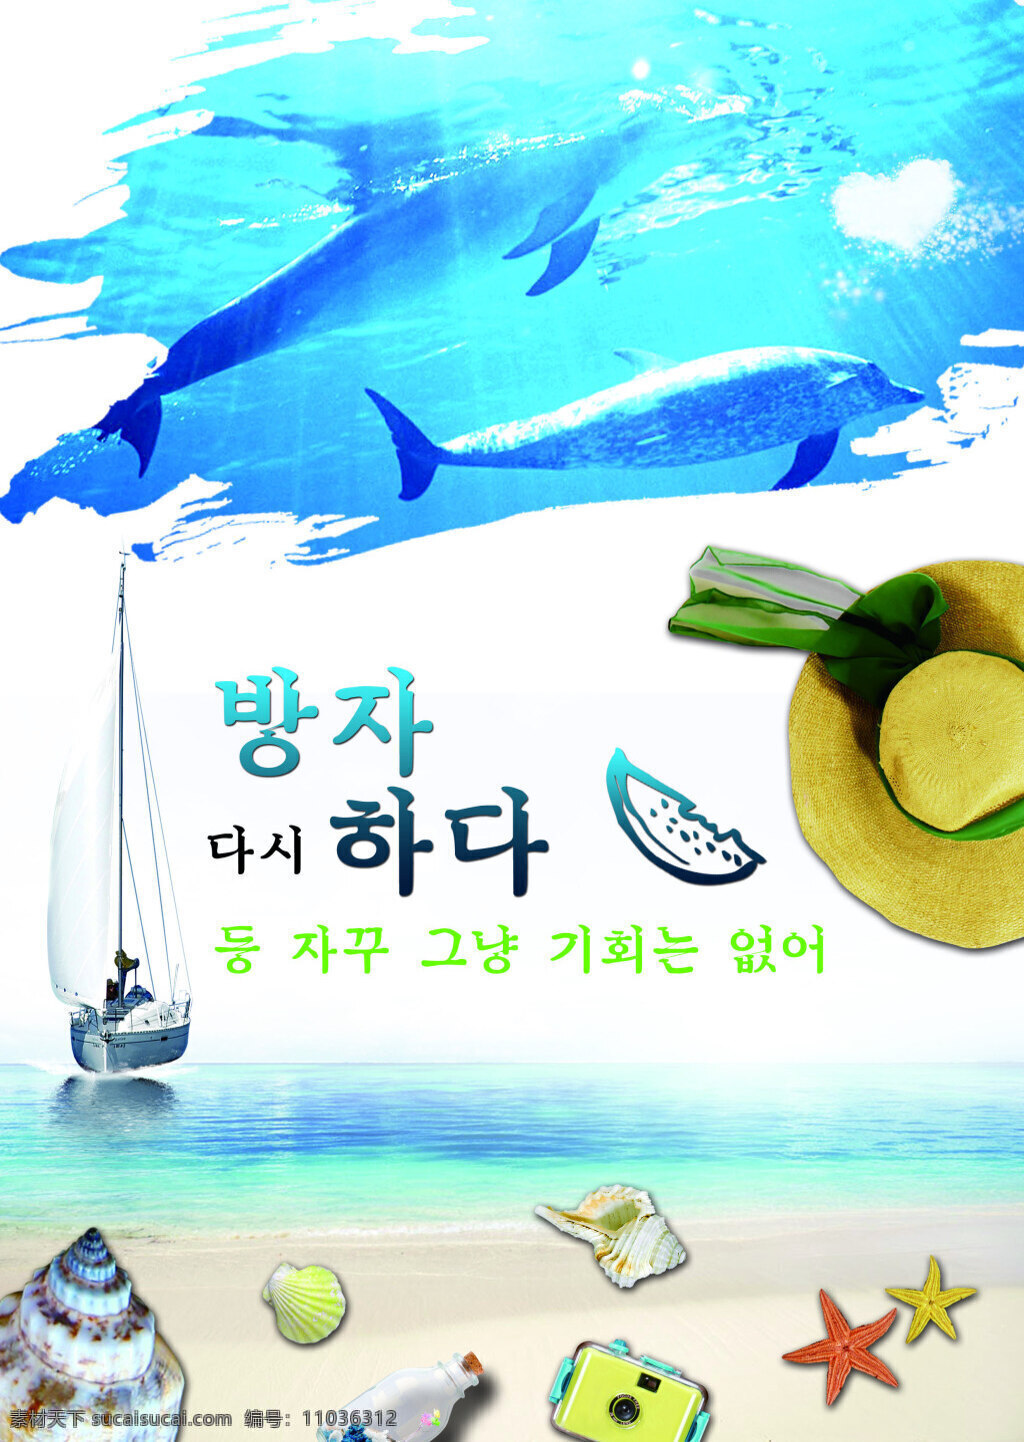 夏日 清凉 海边 风景 海报 海螺 贝壳 海洋 韩语 船 帽子 白色